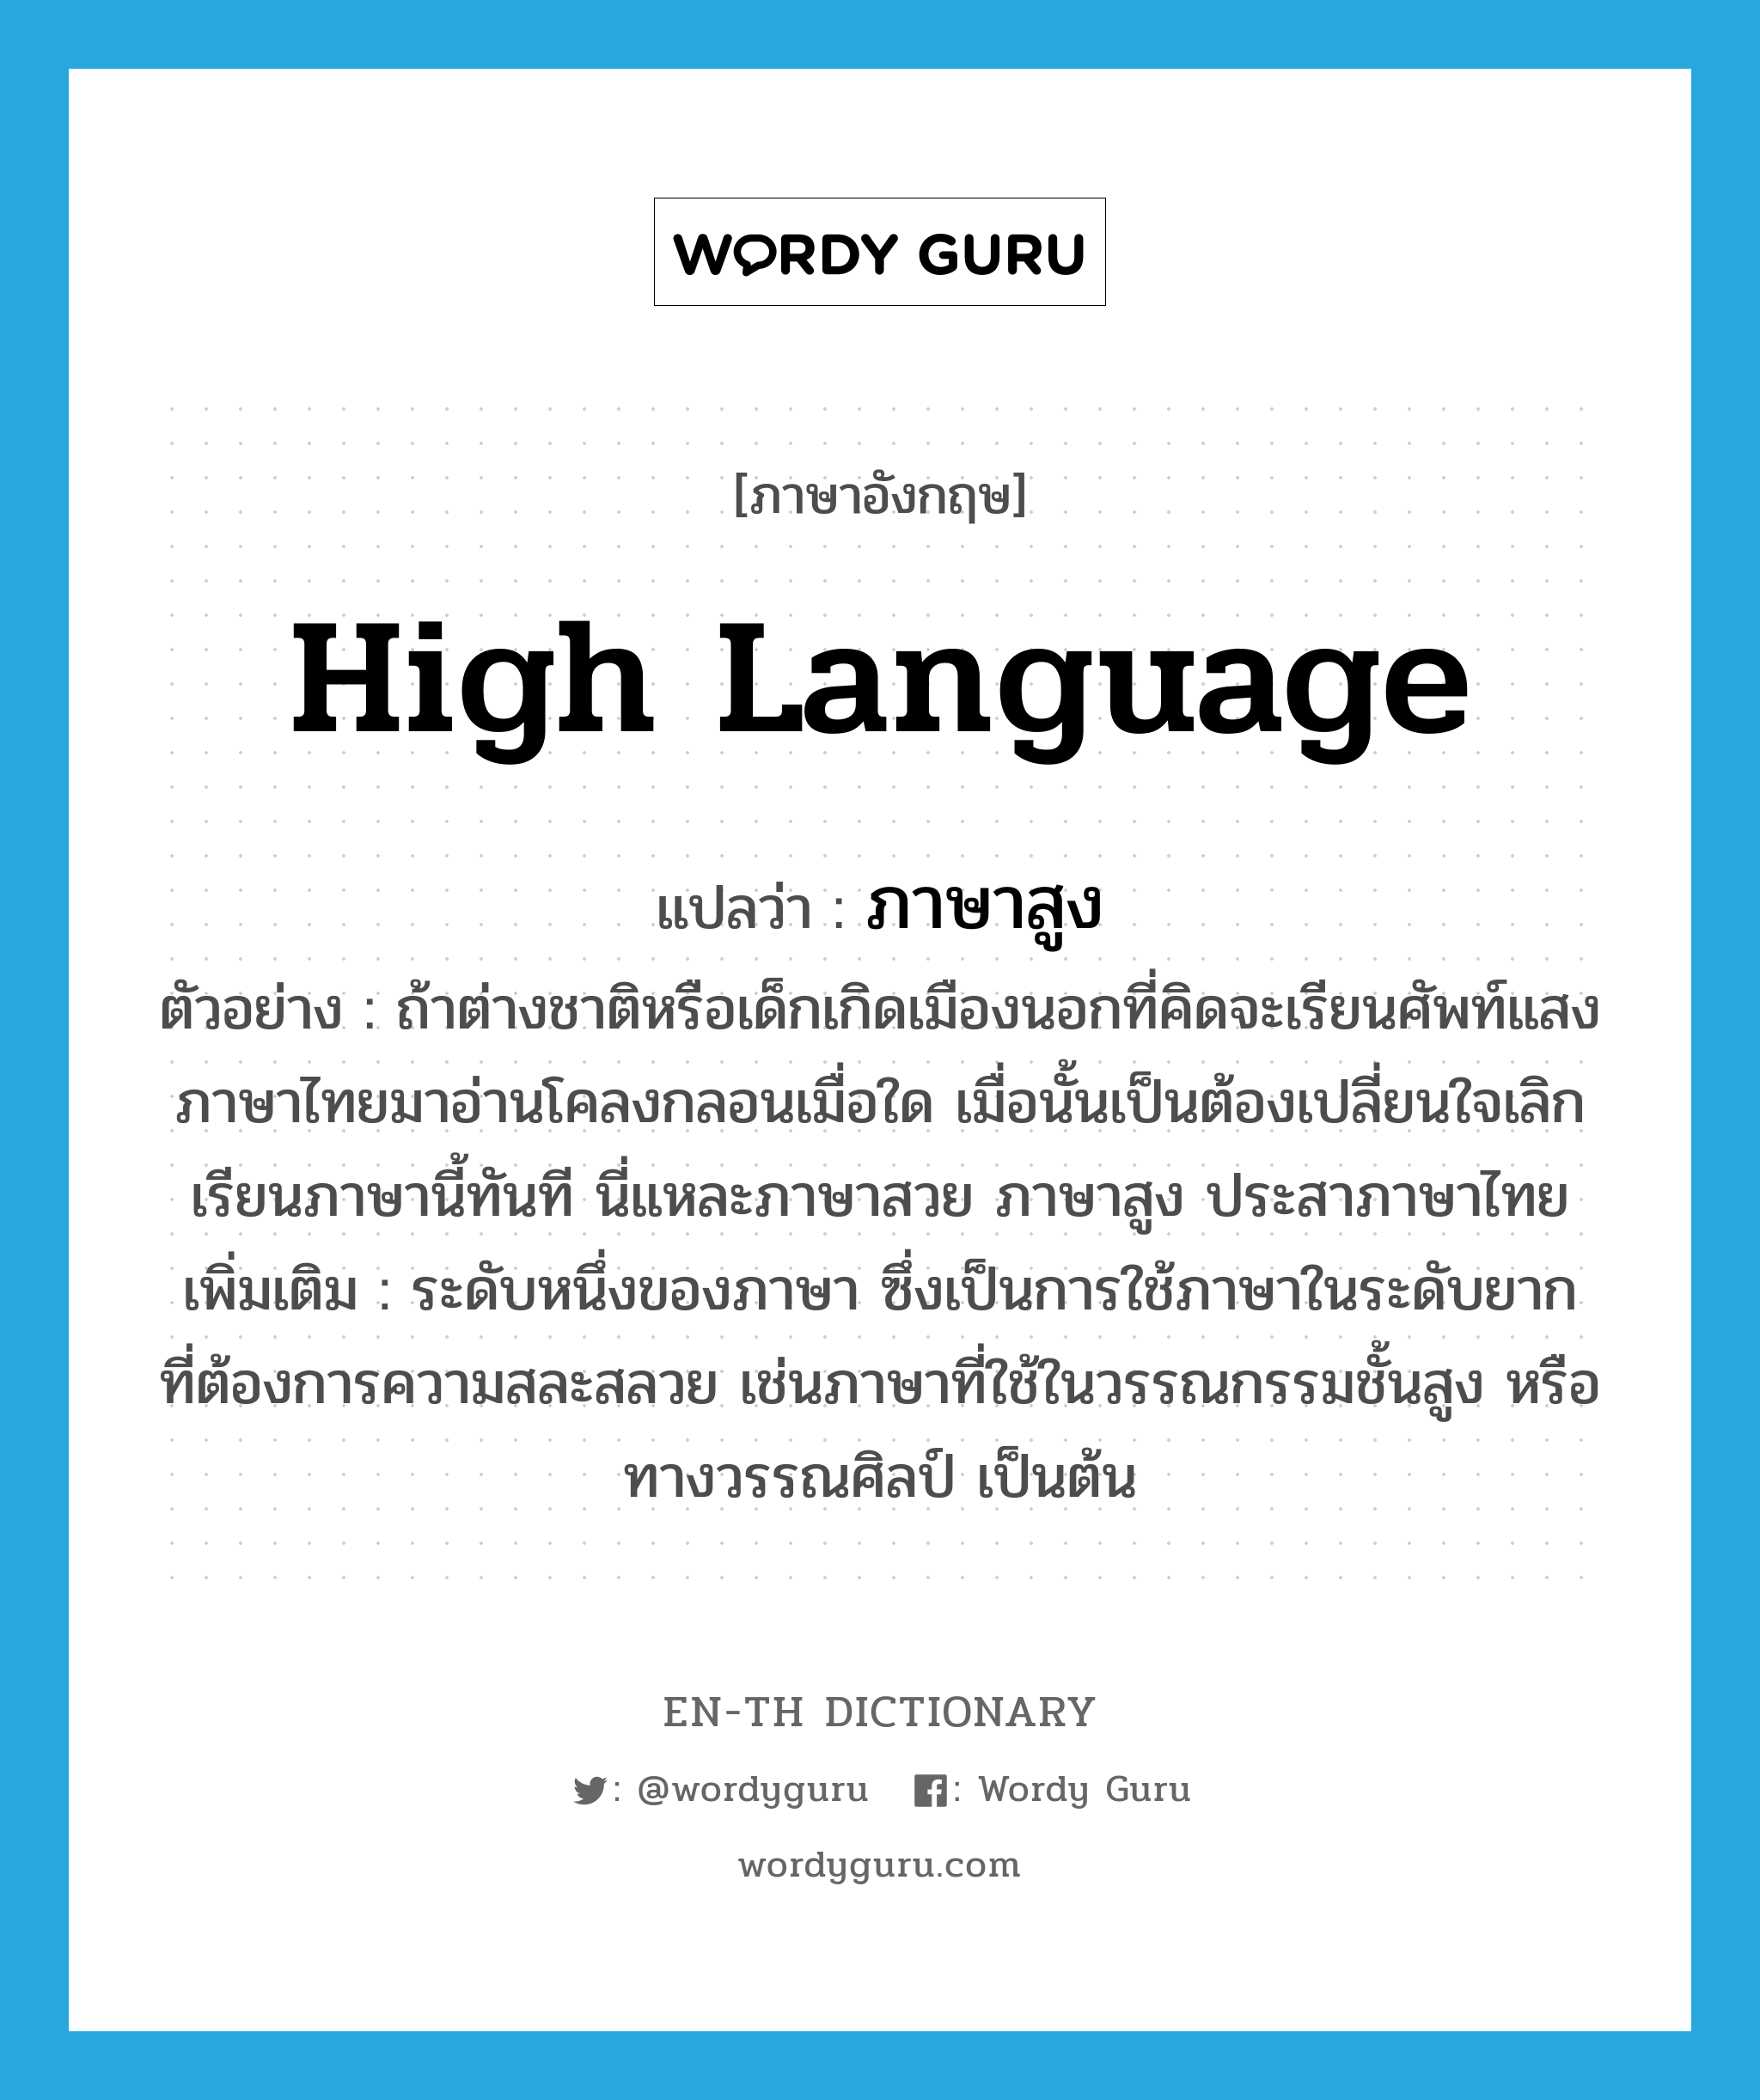 high language แปลว่า?, คำศัพท์ภาษาอังกฤษ high language แปลว่า ภาษาสูง ประเภท N ตัวอย่าง ถ้าต่างชาติหรือเด็กเกิดเมืองนอกที่คิดจะเรียนศัพท์แสงภาษาไทยมาอ่านโคลงกลอนเมื่อใด เมื่อนั้นเป็นต้องเปลี่ยนใจเลิกเรียนภาษานี้ทันที นี่แหละภาษาสวย ภาษาสูง ประสาภาษาไทย เพิ่มเติม ระดับหนึ่งของภาษา ซึ่งเป็นการใช้ภาษาในระดับยาก ที่ต้องการความสละสลวย เช่นภาษาที่ใช้ในวรรณกรรมชั้นสูง หรือทางวรรณศิลป์ เป็นต้น หมวด N